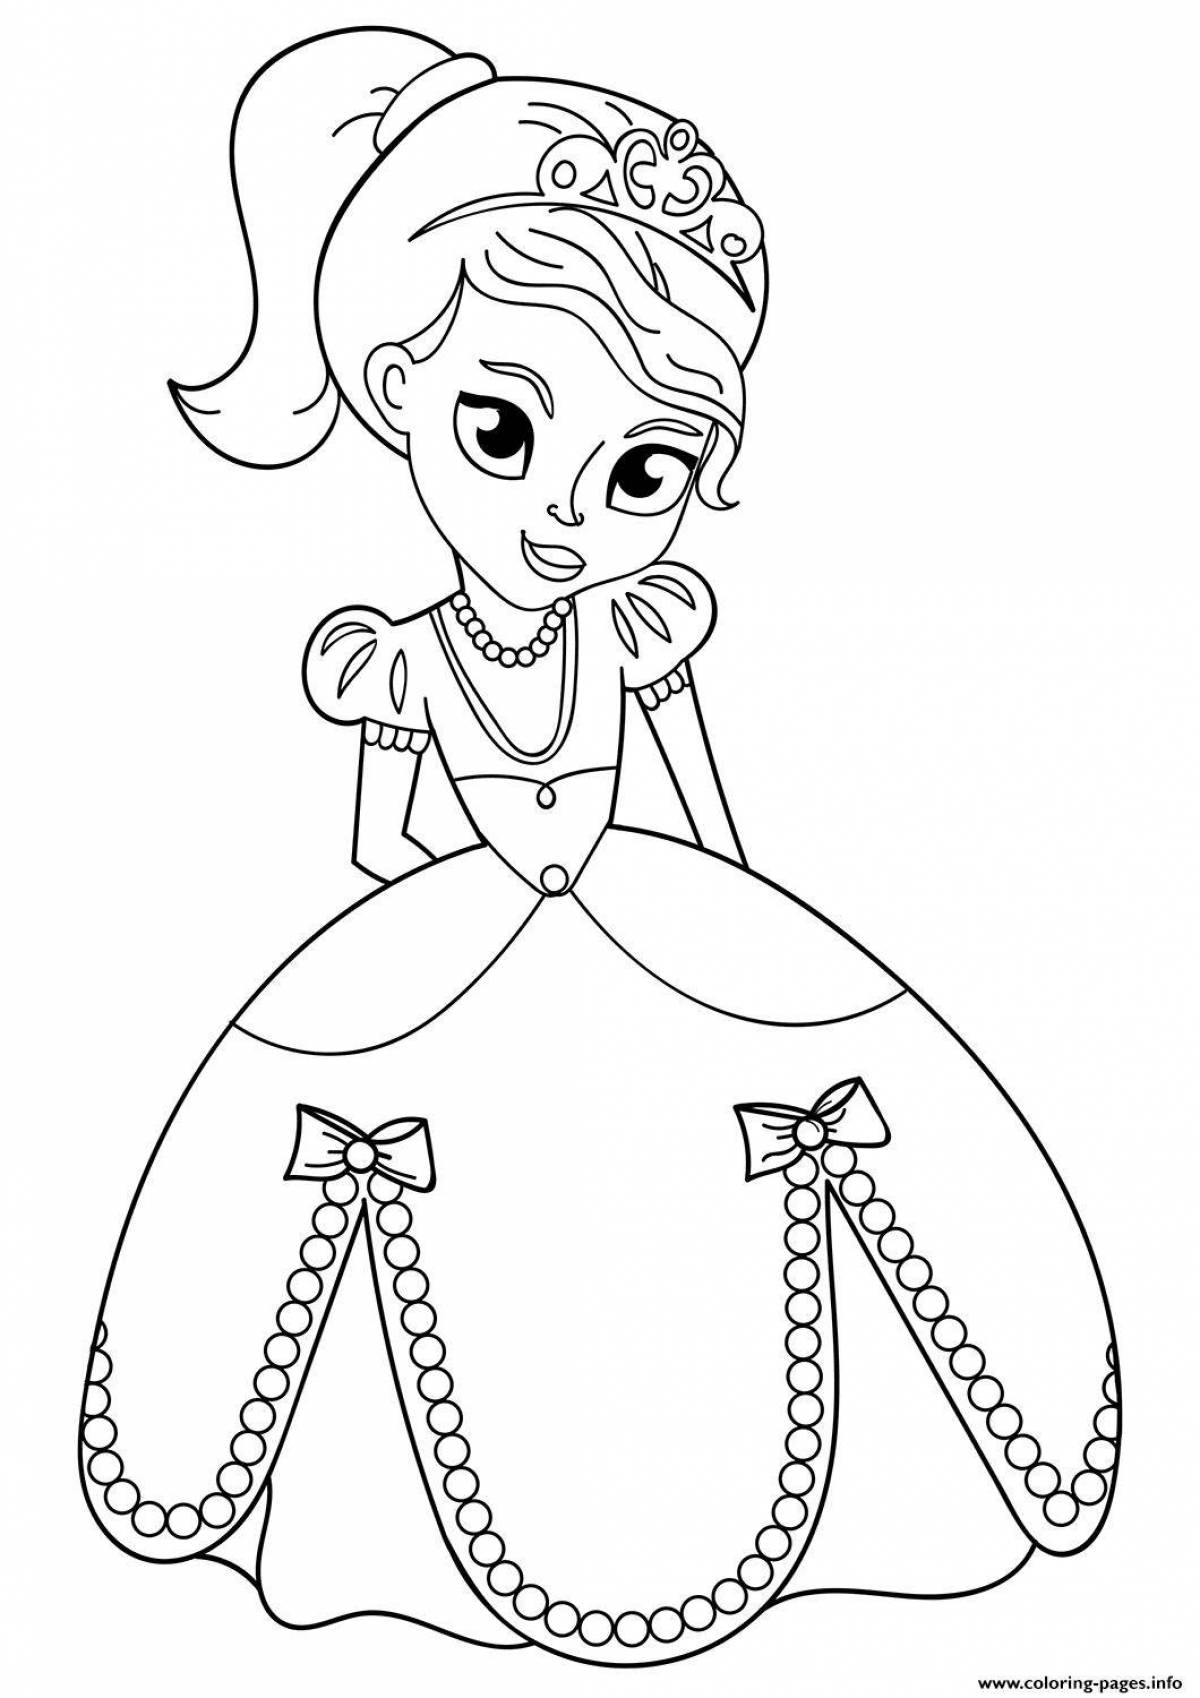 Раскраска София Прекрасная - принцесса для девочек распечатать бесплатно в формате а4 или скачать